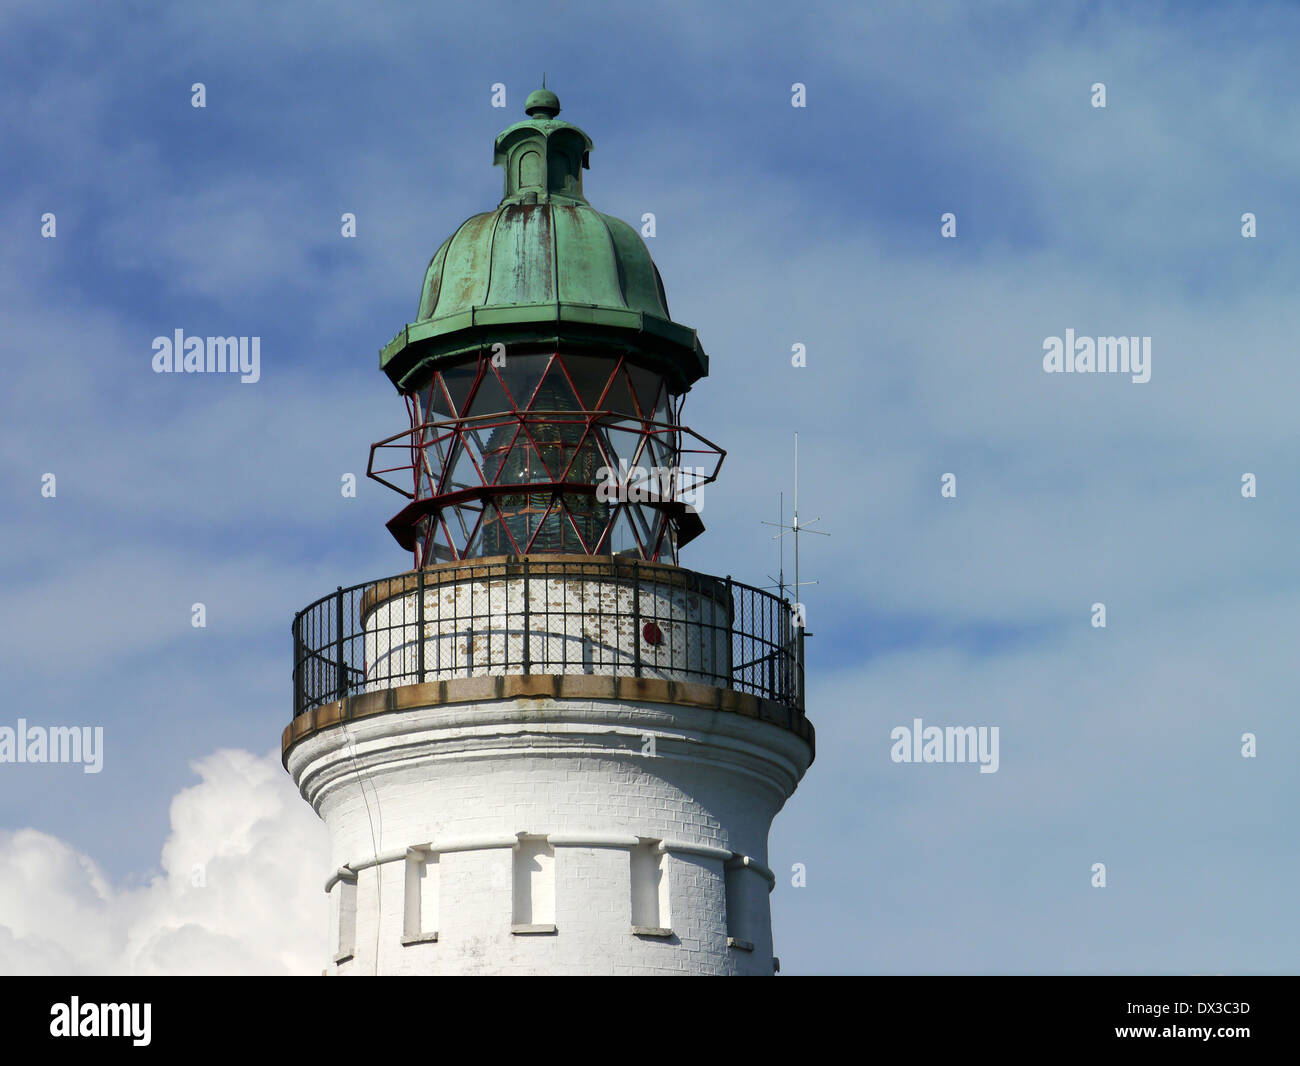 Ary stevns klint stevns, phare, la Nouvelle-Zélande, le Danemark Banque D'Images